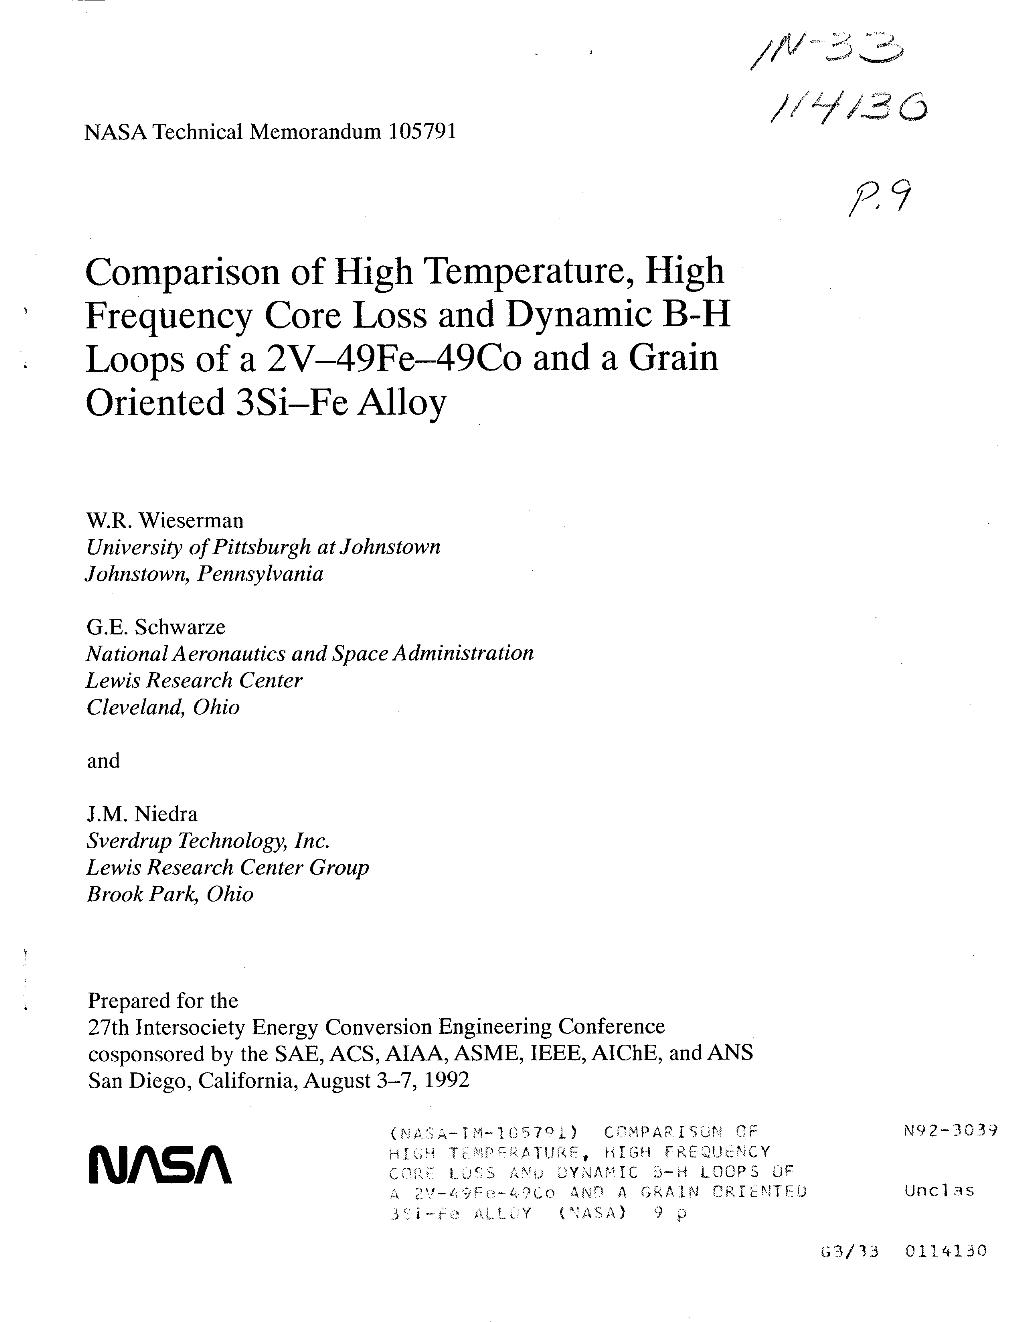 V I. NASA Technical Memorandum 105791